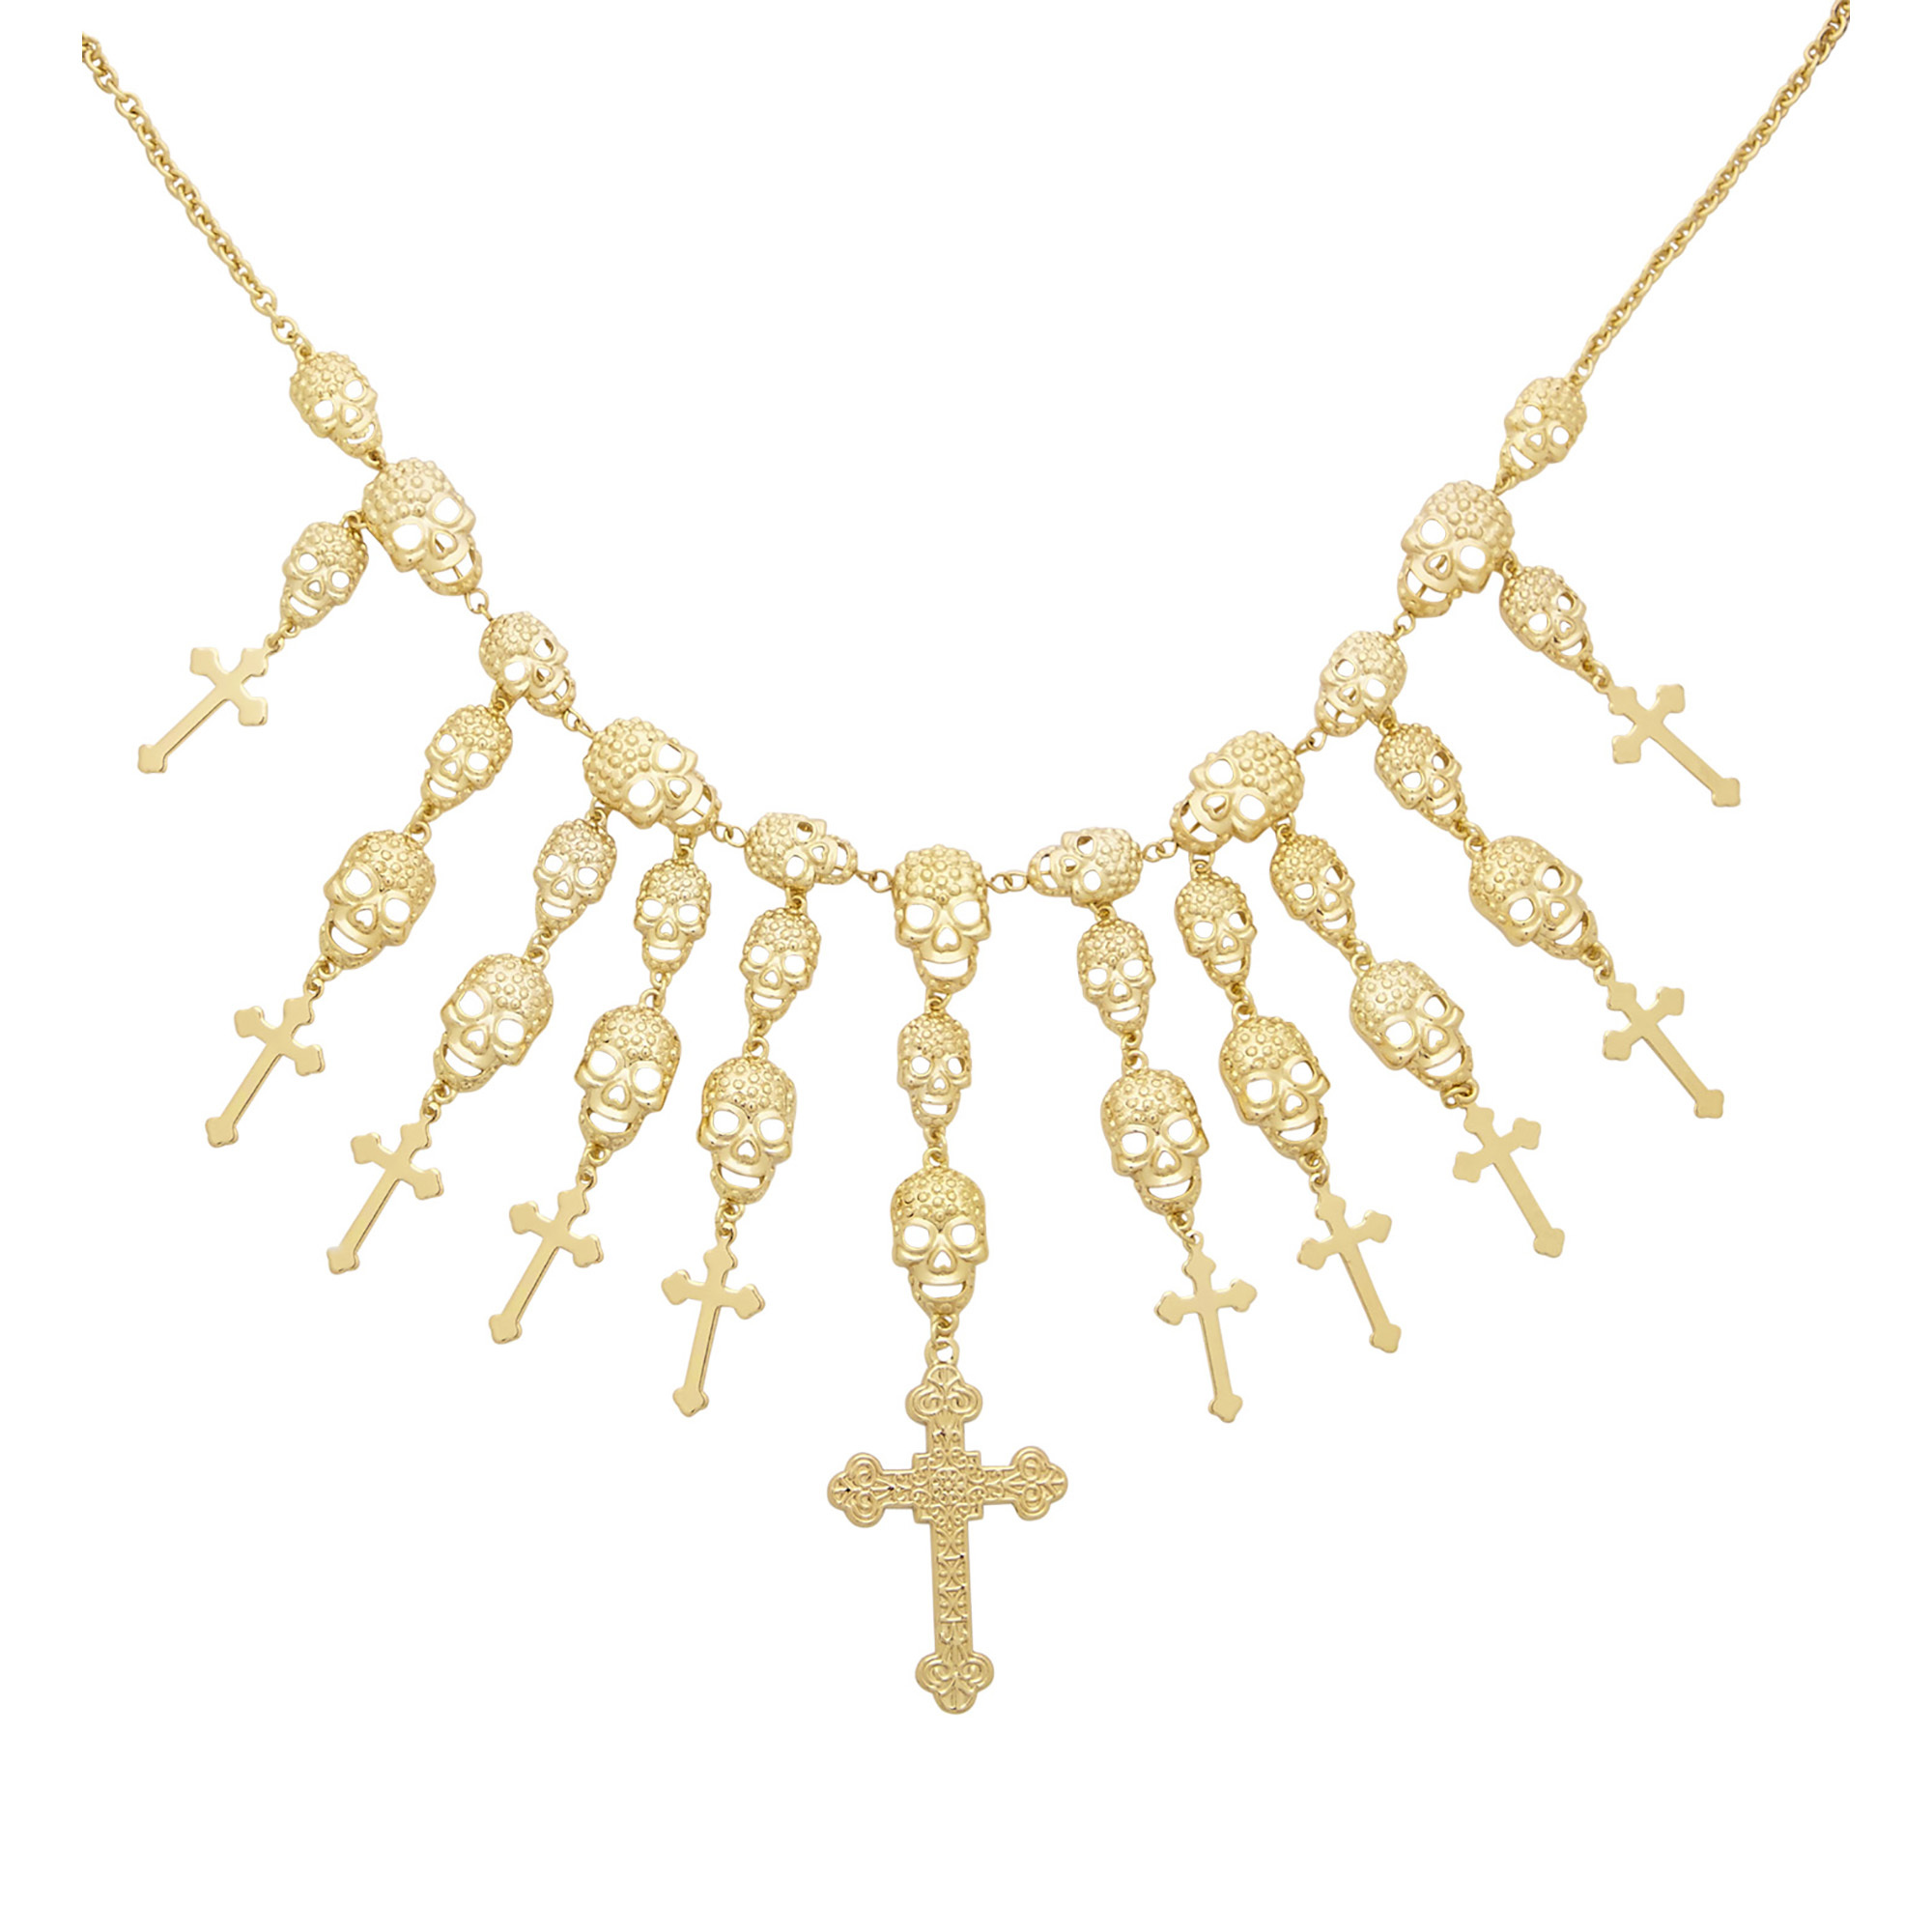 gothic halsketting goud met schedels en kruizen